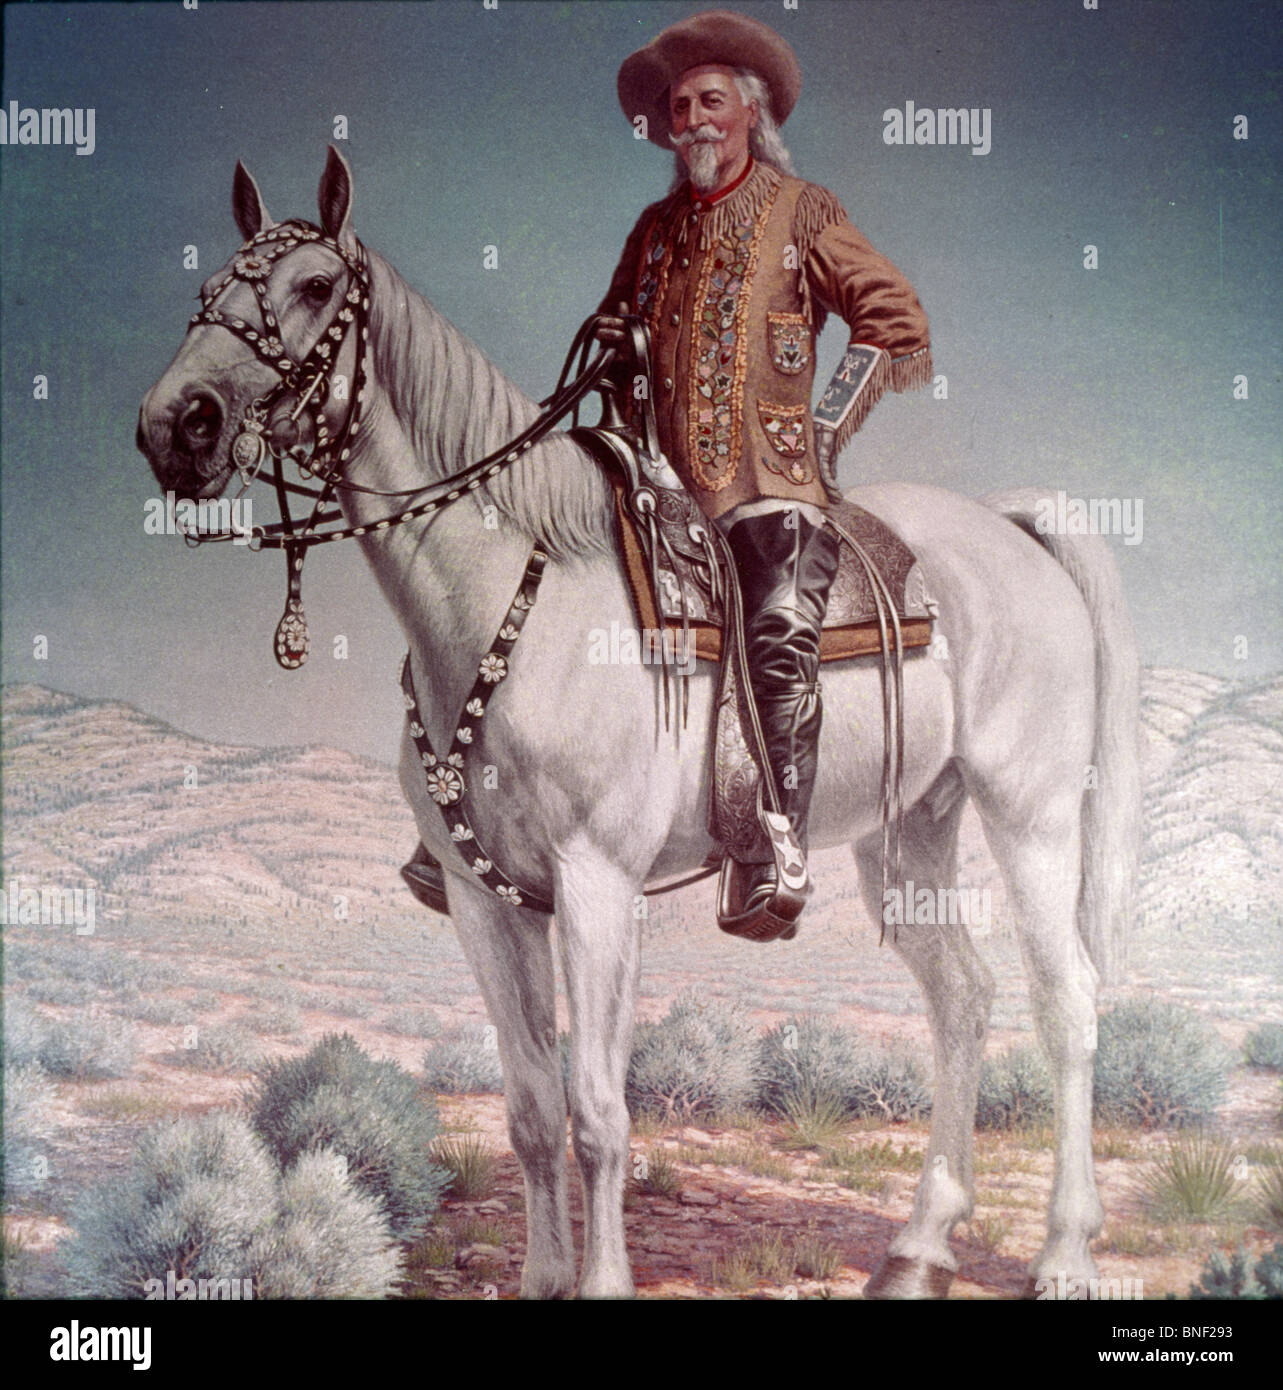 Buffalo Bill Cody on horse, American History Stock Photo